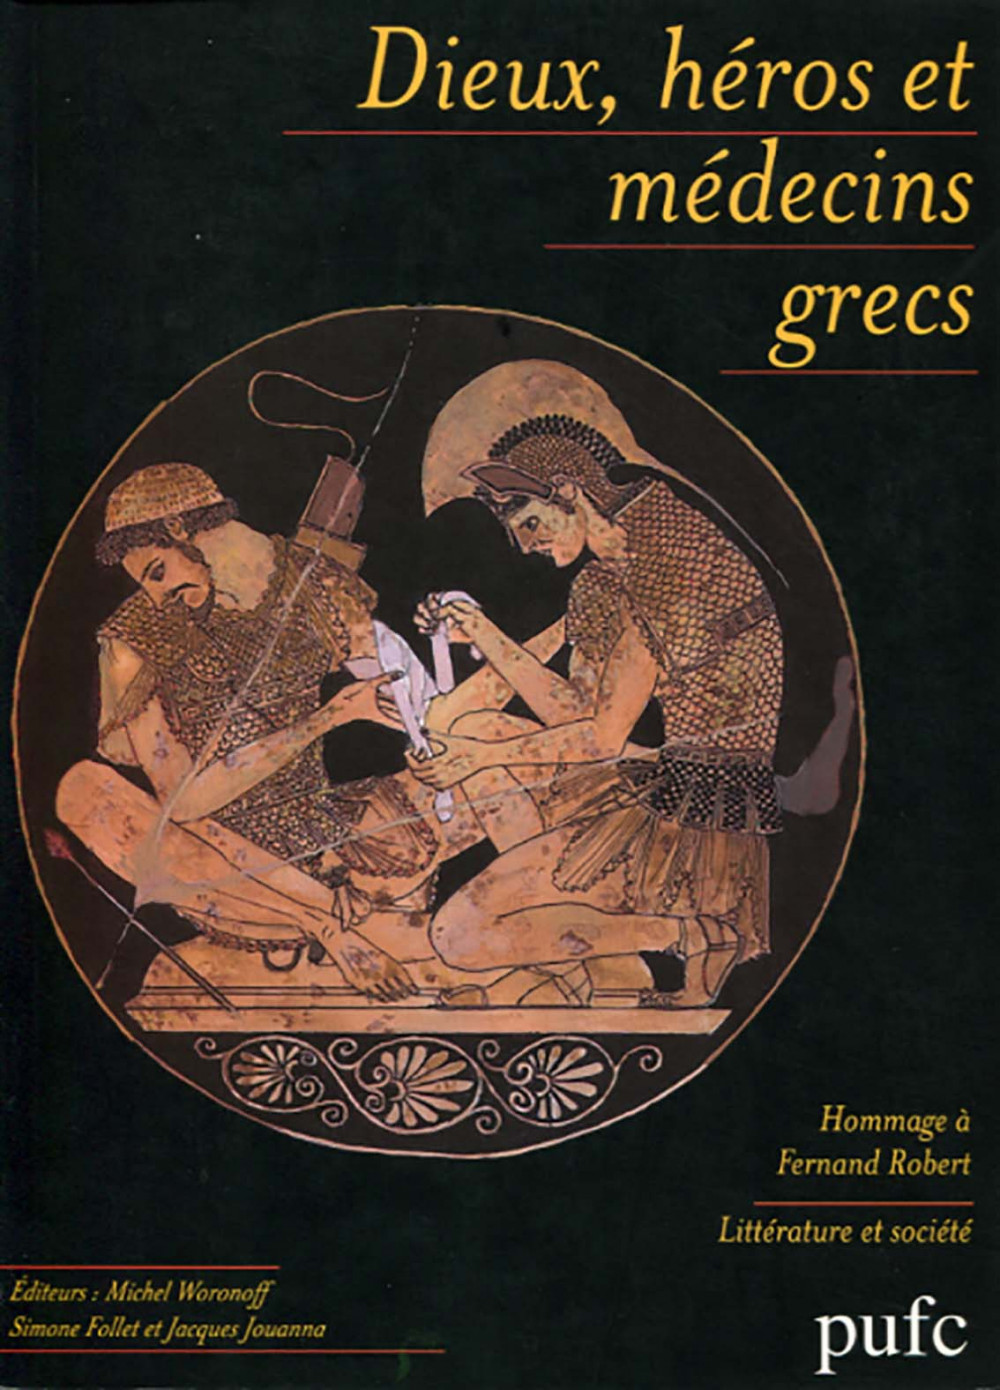 Dieux, héros et médecins grecs